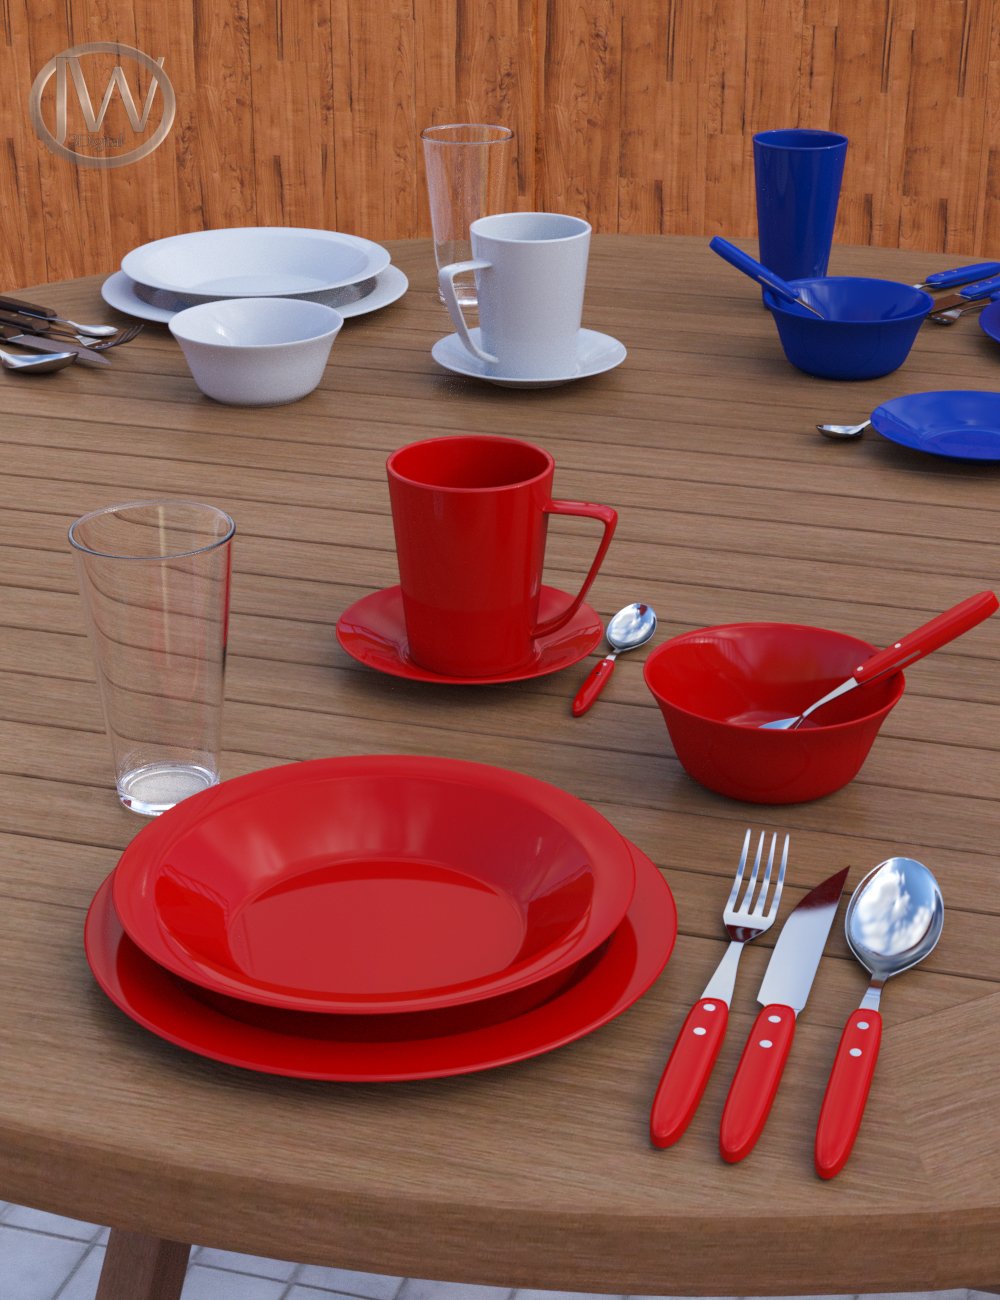 JW Dinnerware Set by: JWolf, 3D Models by Daz 3D